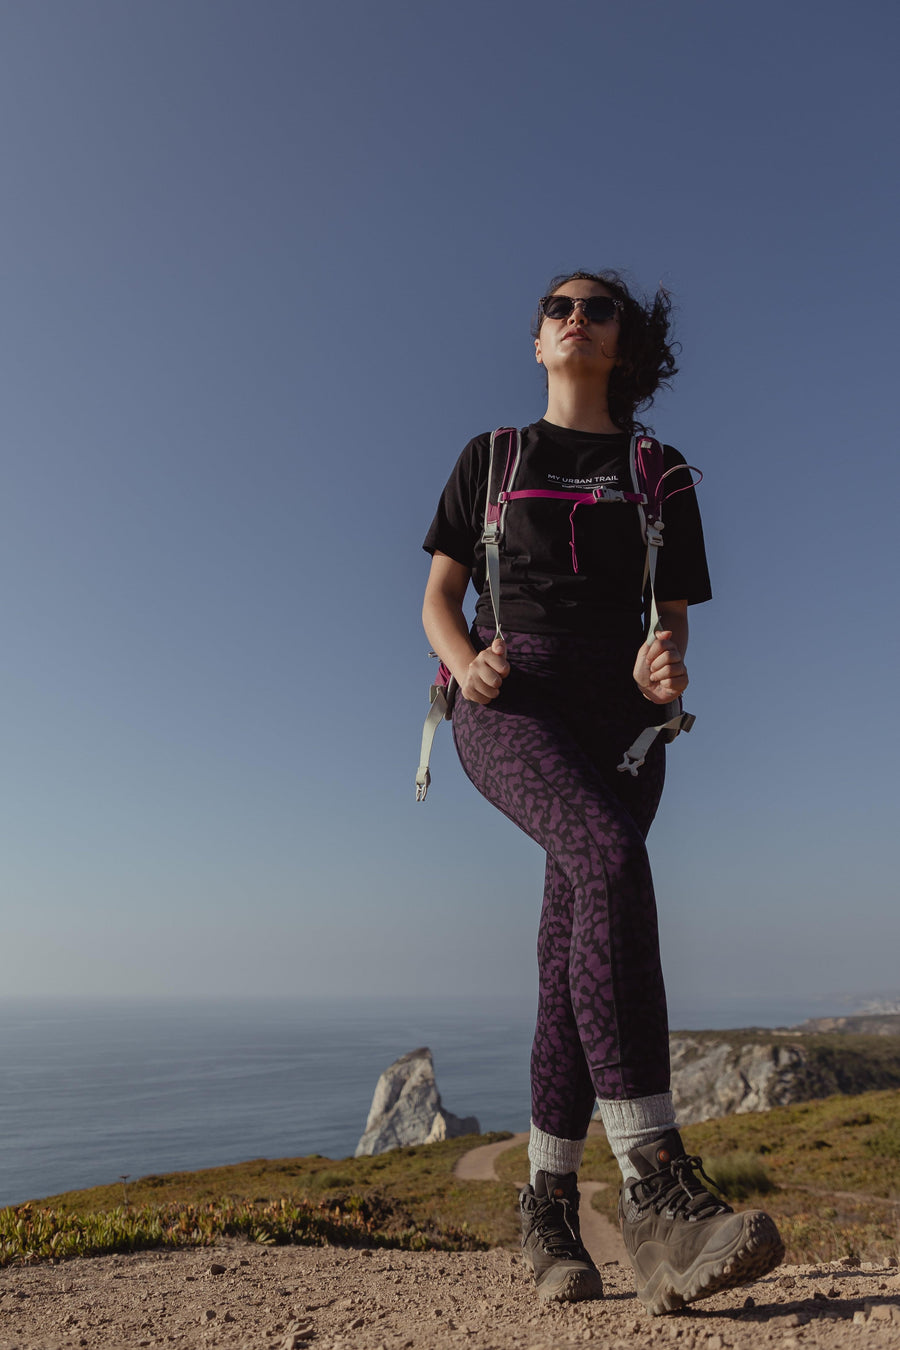 TRAILBLAZER Purple Printed Hiking Leggings – My Urban Trail